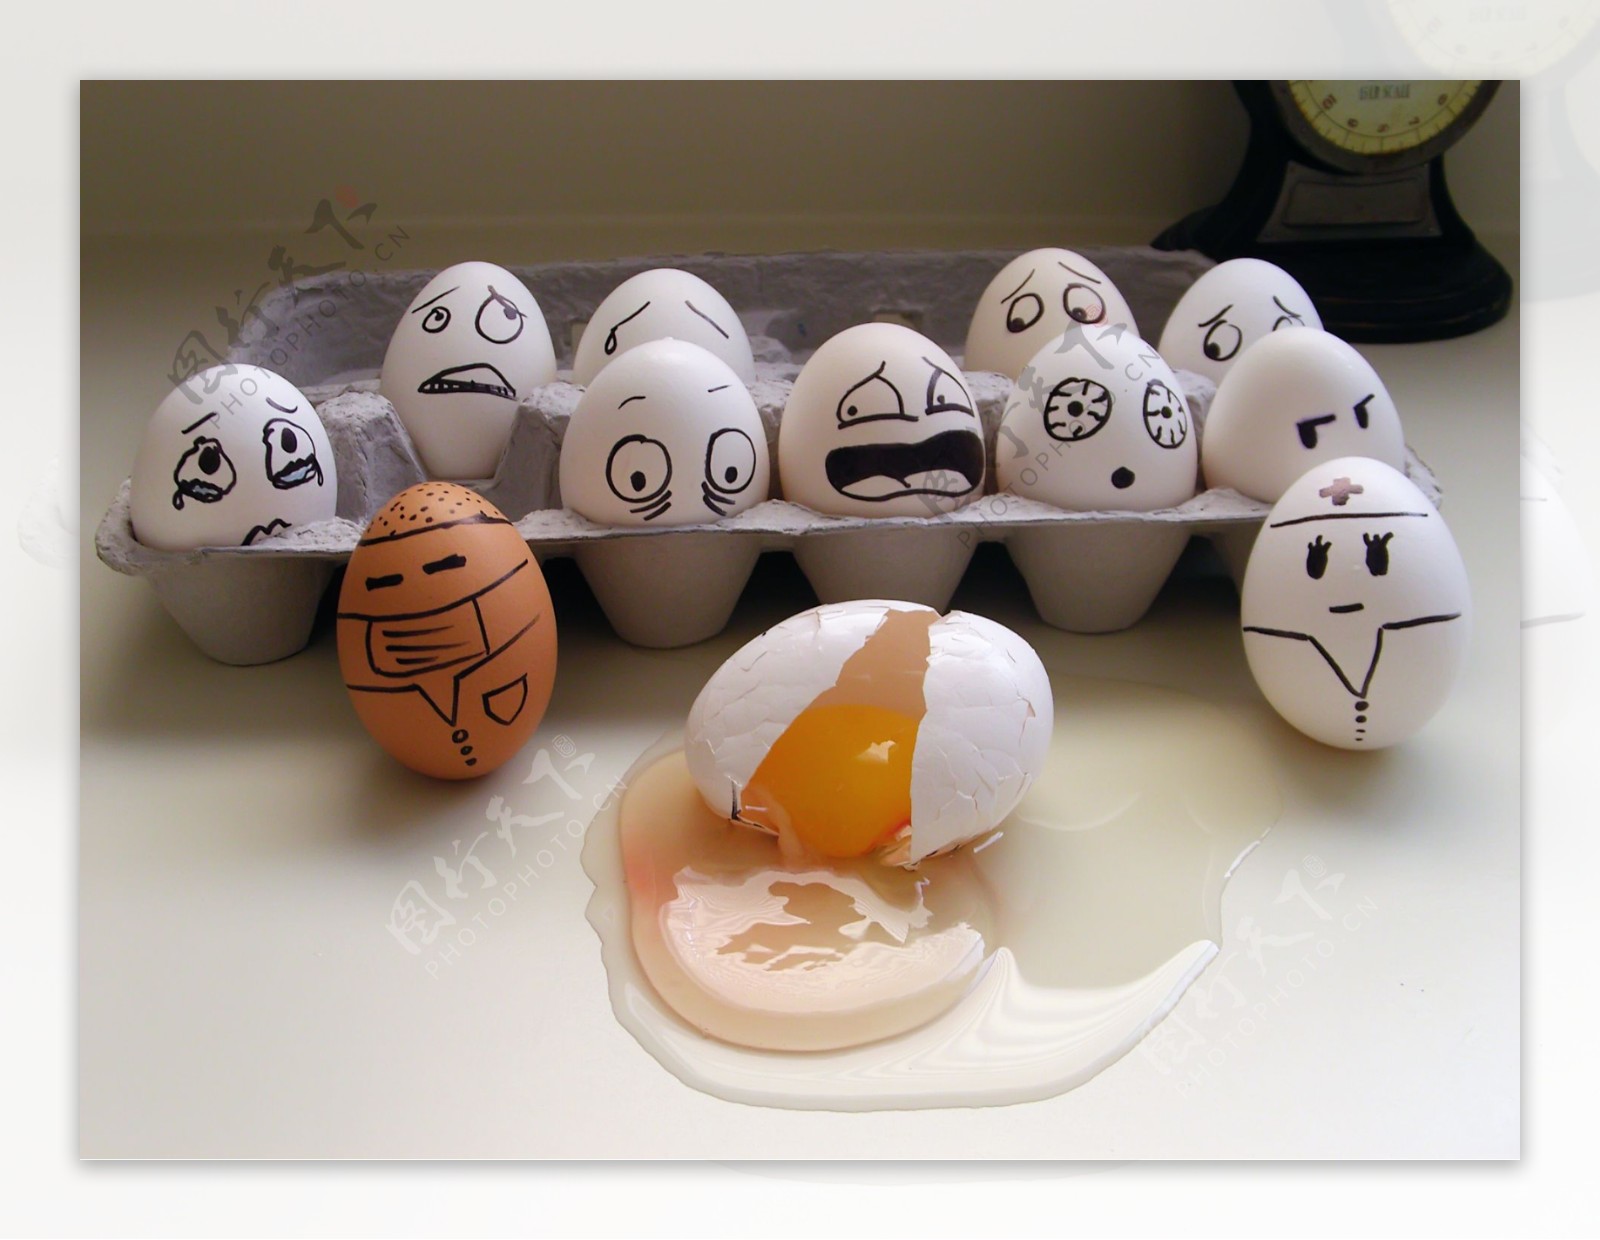 摔碎的可爱鸡蛋表情